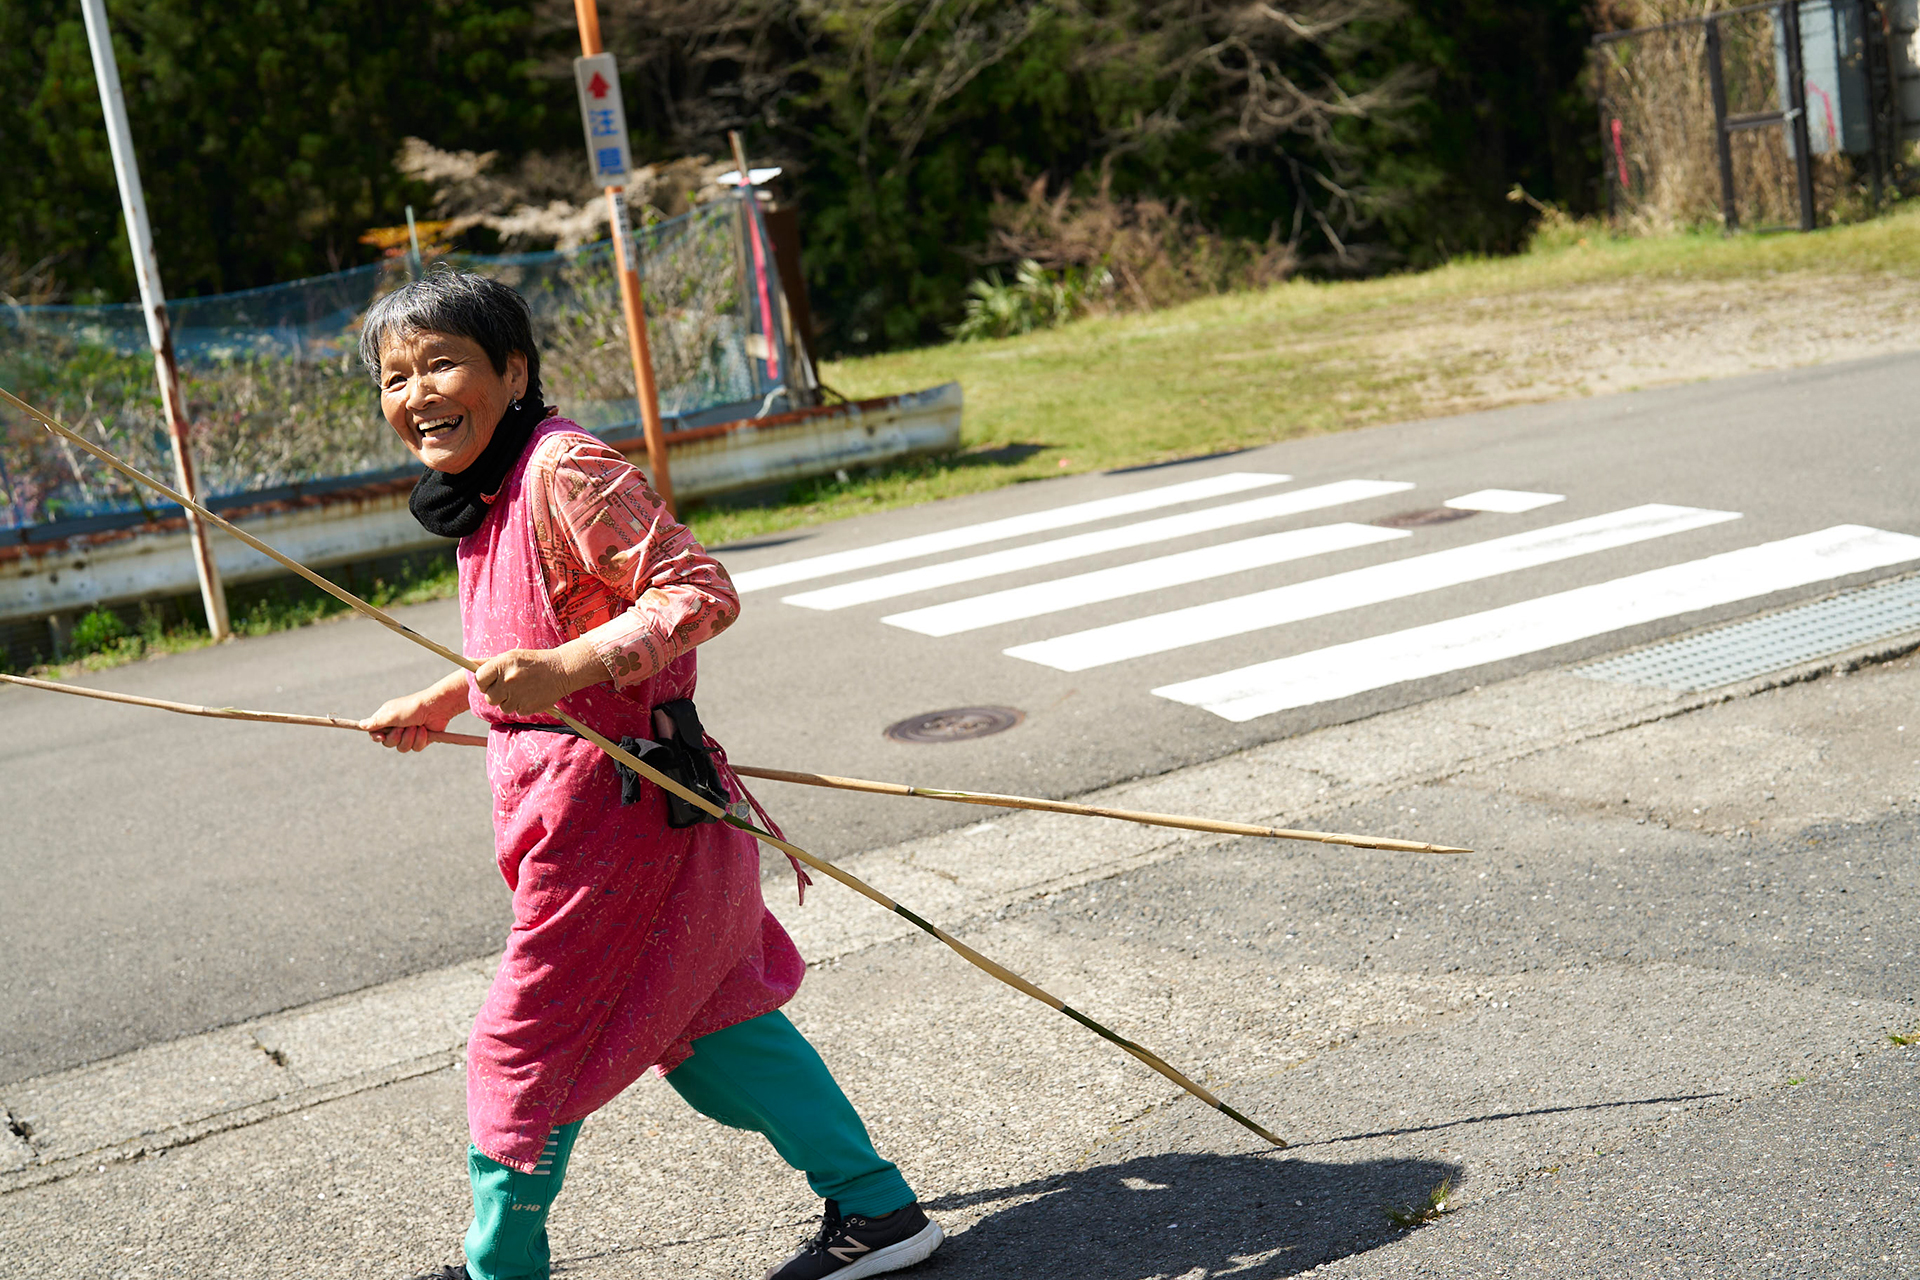 22 〜幻の熊野古道再生を目指す「奥辺路（おくへち）プロジェクト」とは〜 「トレイルランニングの半分はトレイルでできている」<br/>トレイルランナー・中川政寿